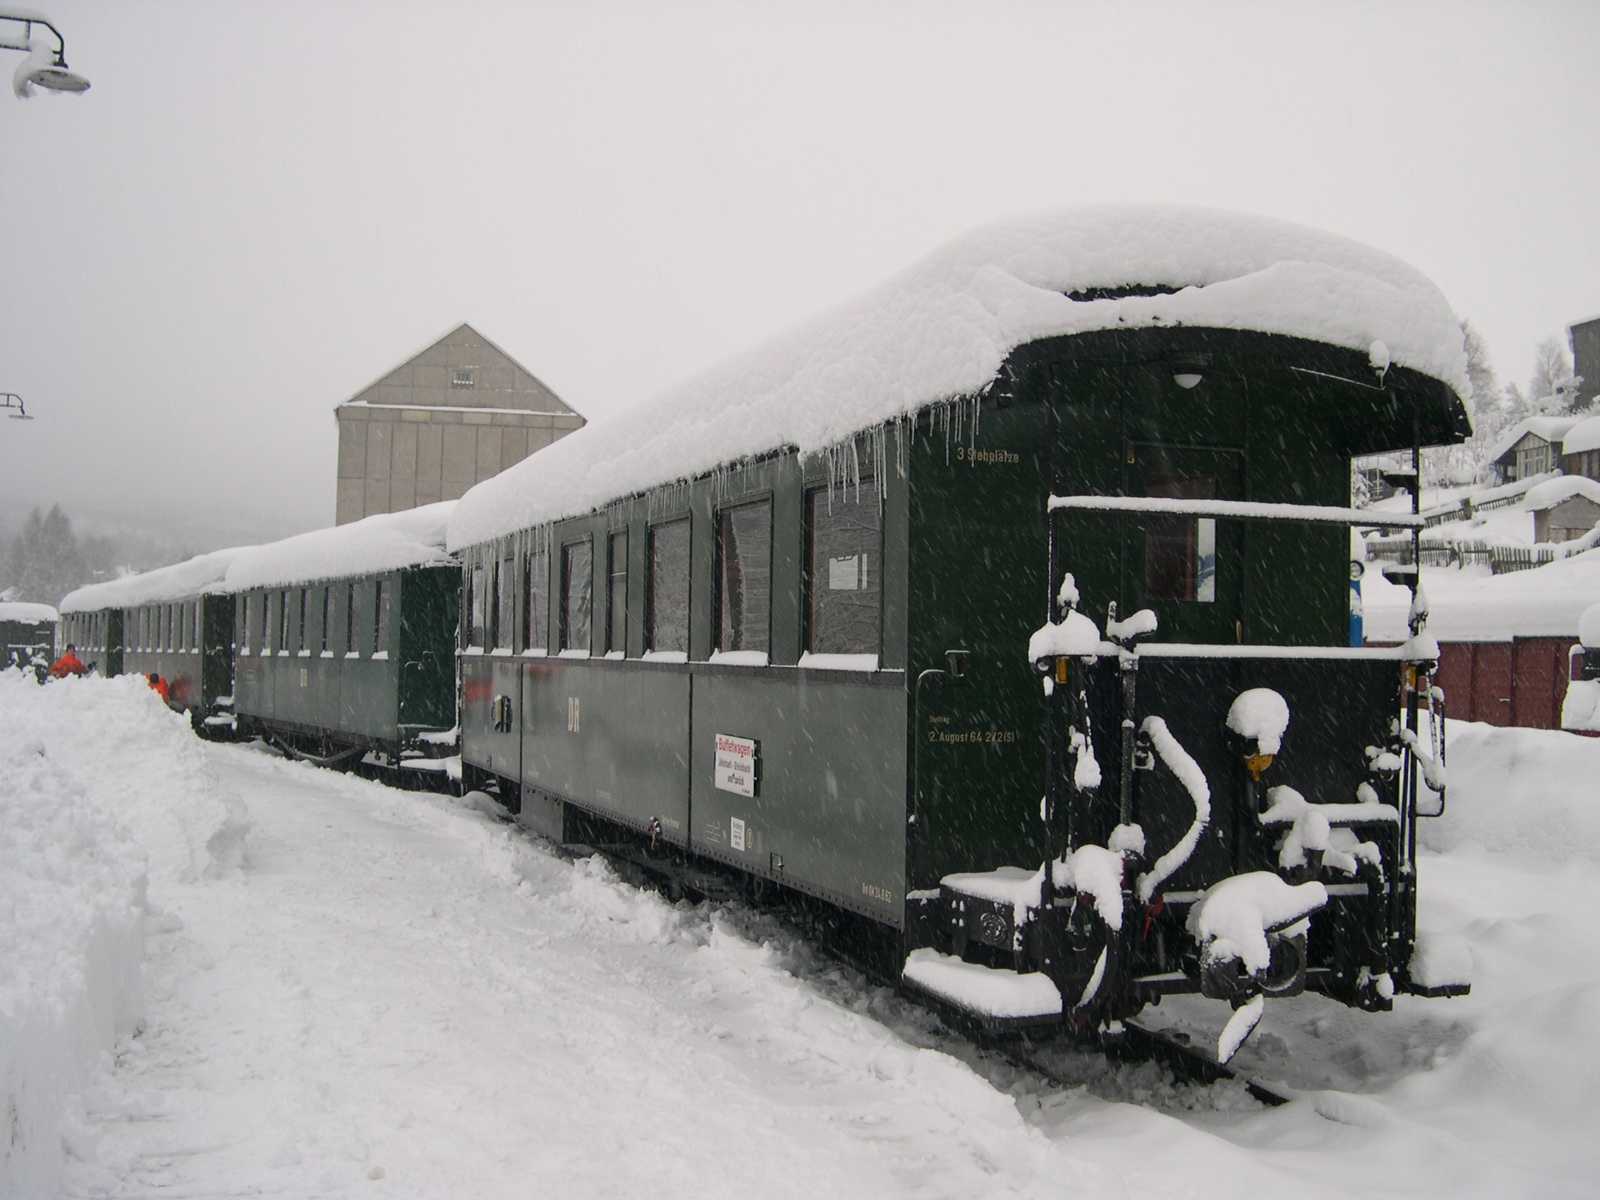 Letzter Winter mit riesigen Schneebergen auf den Wagen, da in der Fahrzeughalle noch nicht alle Gleise nutzbar sind. Im Vordergrund der Bistrowagen 970-458.